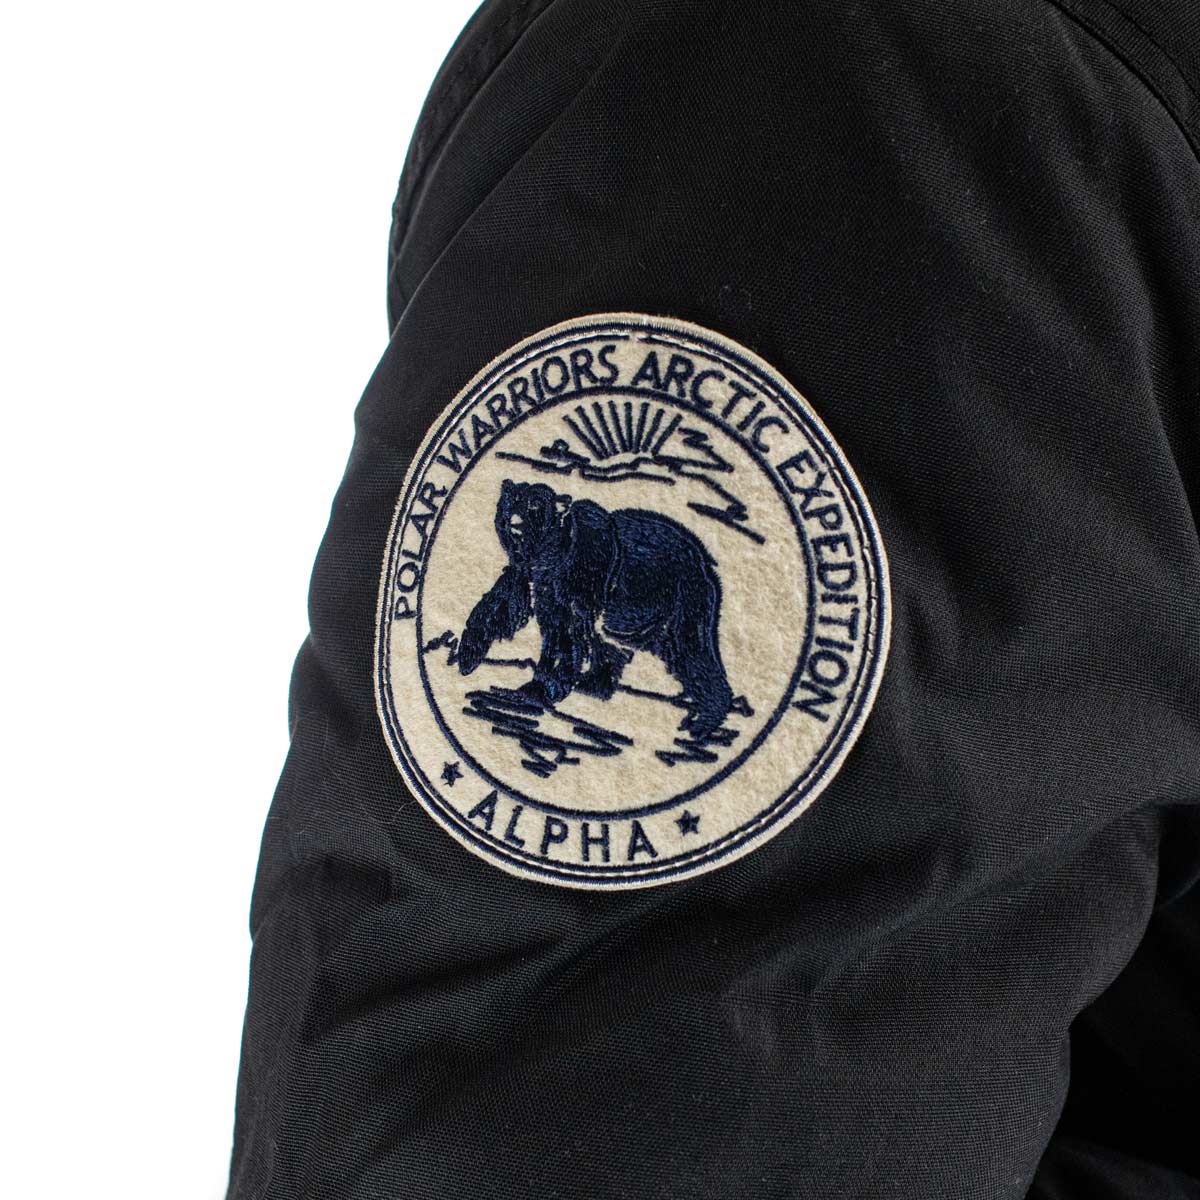 Alpha Industries Inc Polar Jacket SV Jacke 133141/03-